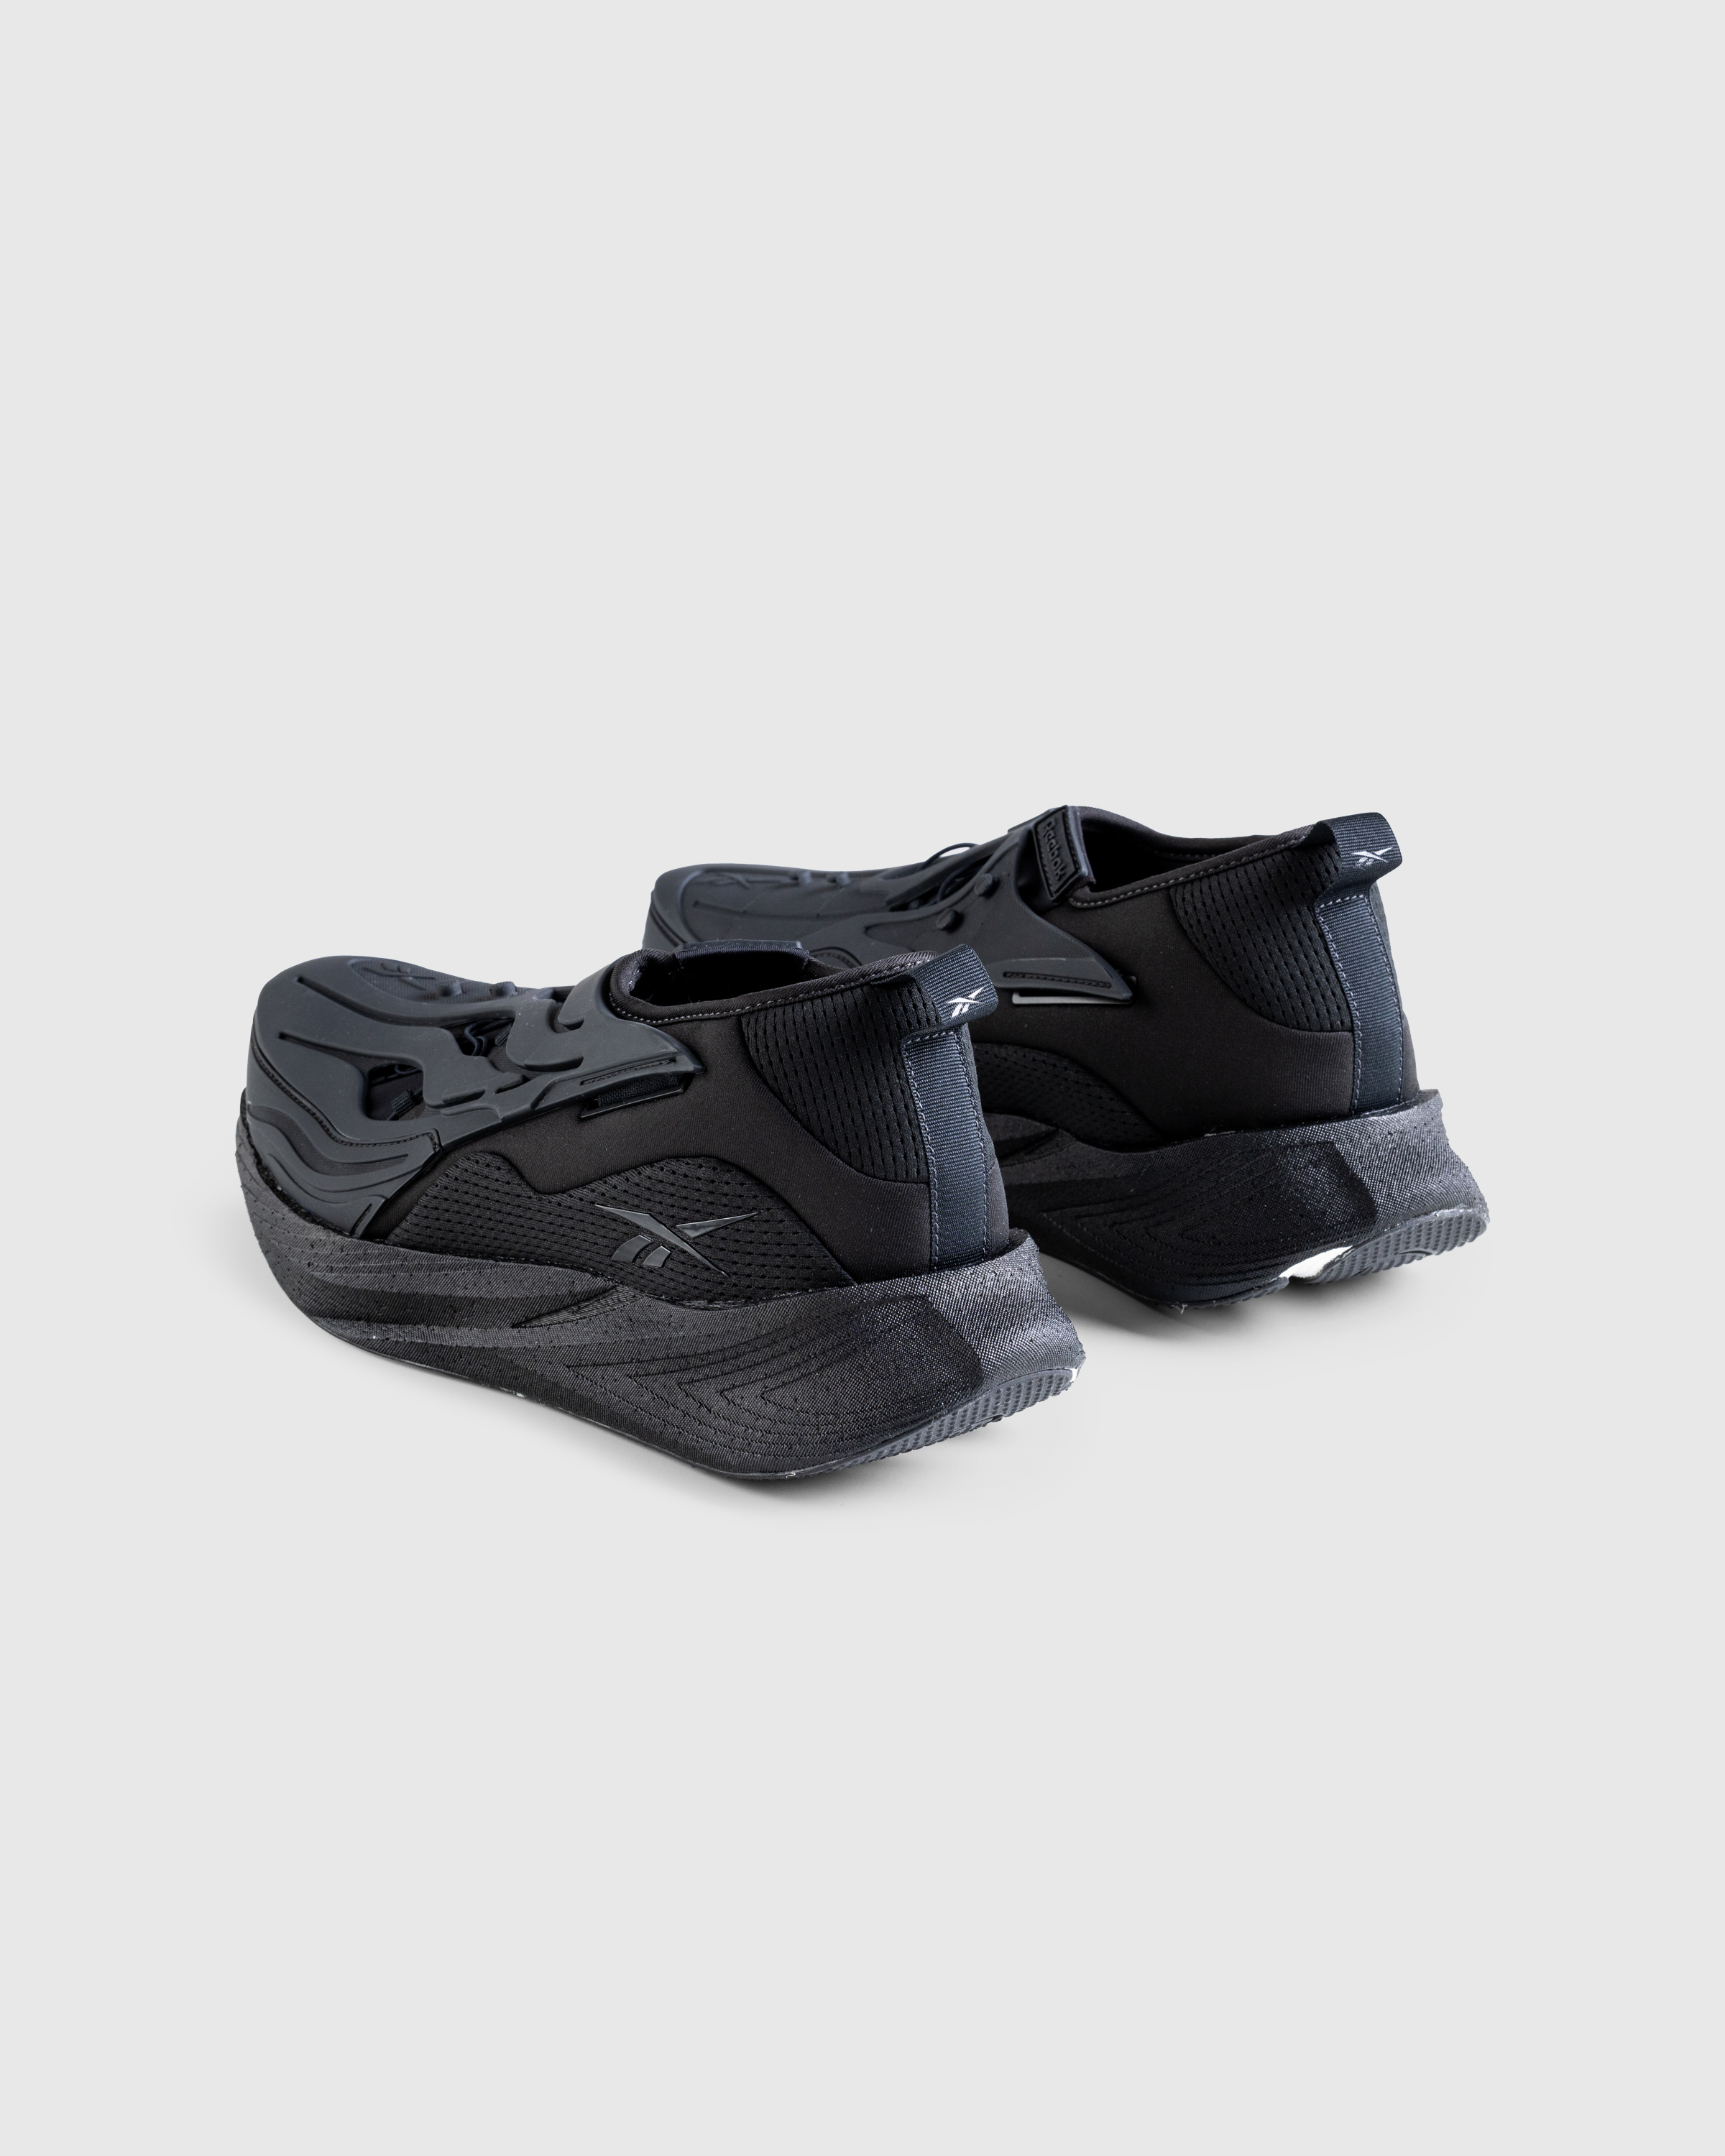 Reebok – Floatride Energy Argus X Black - Sneakers - Black - Image 4